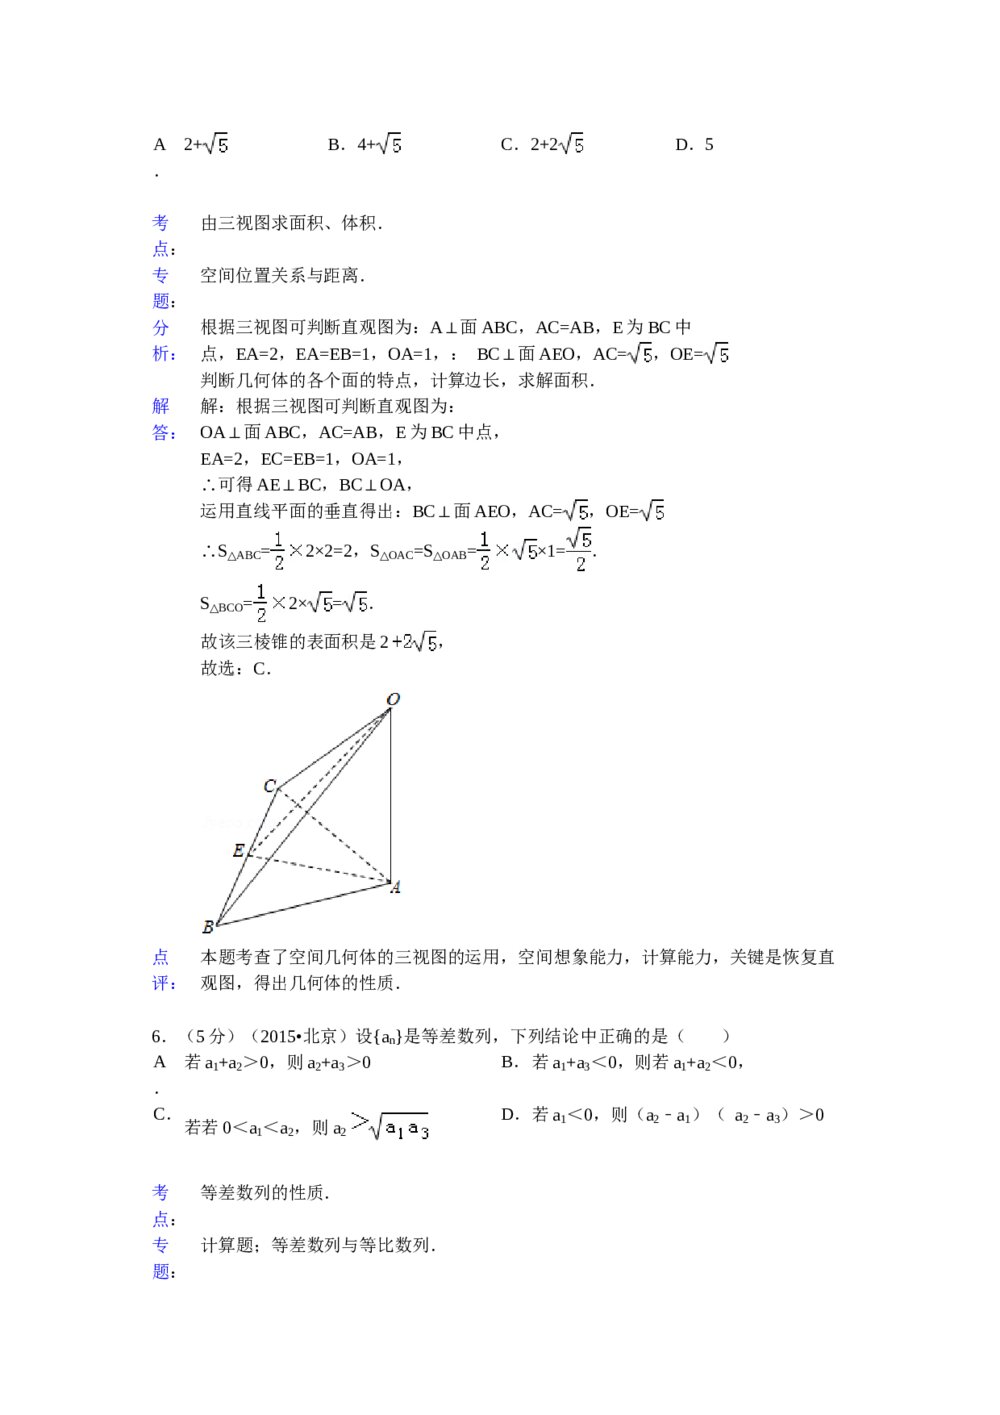 2015年北京高考数学试题试卷(理科word版)+答案分析9